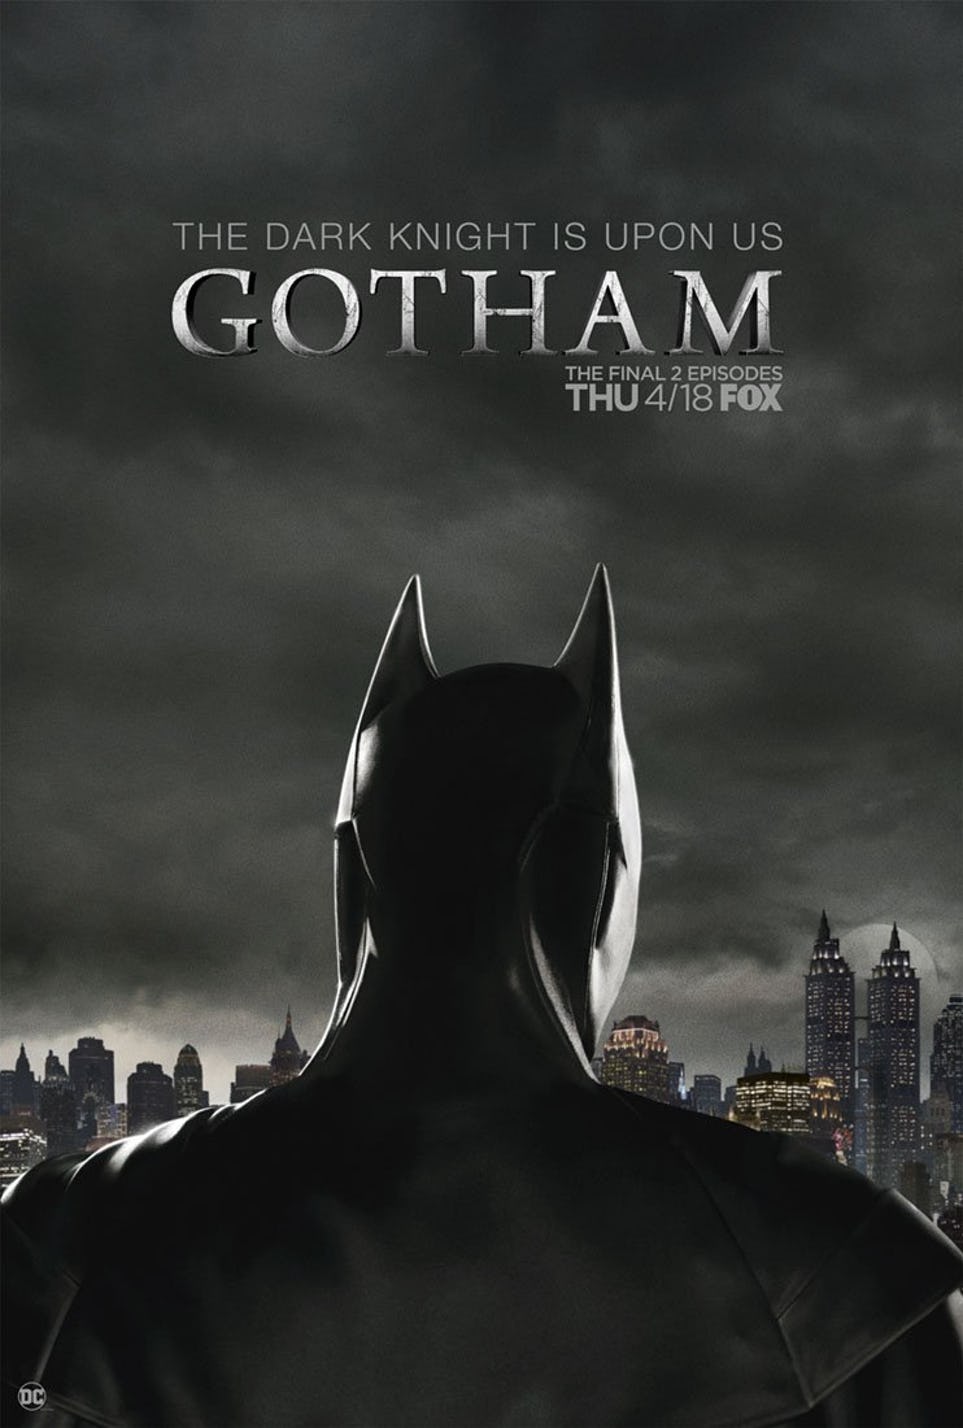 Gotham season 5 poster unveils the Batman suit